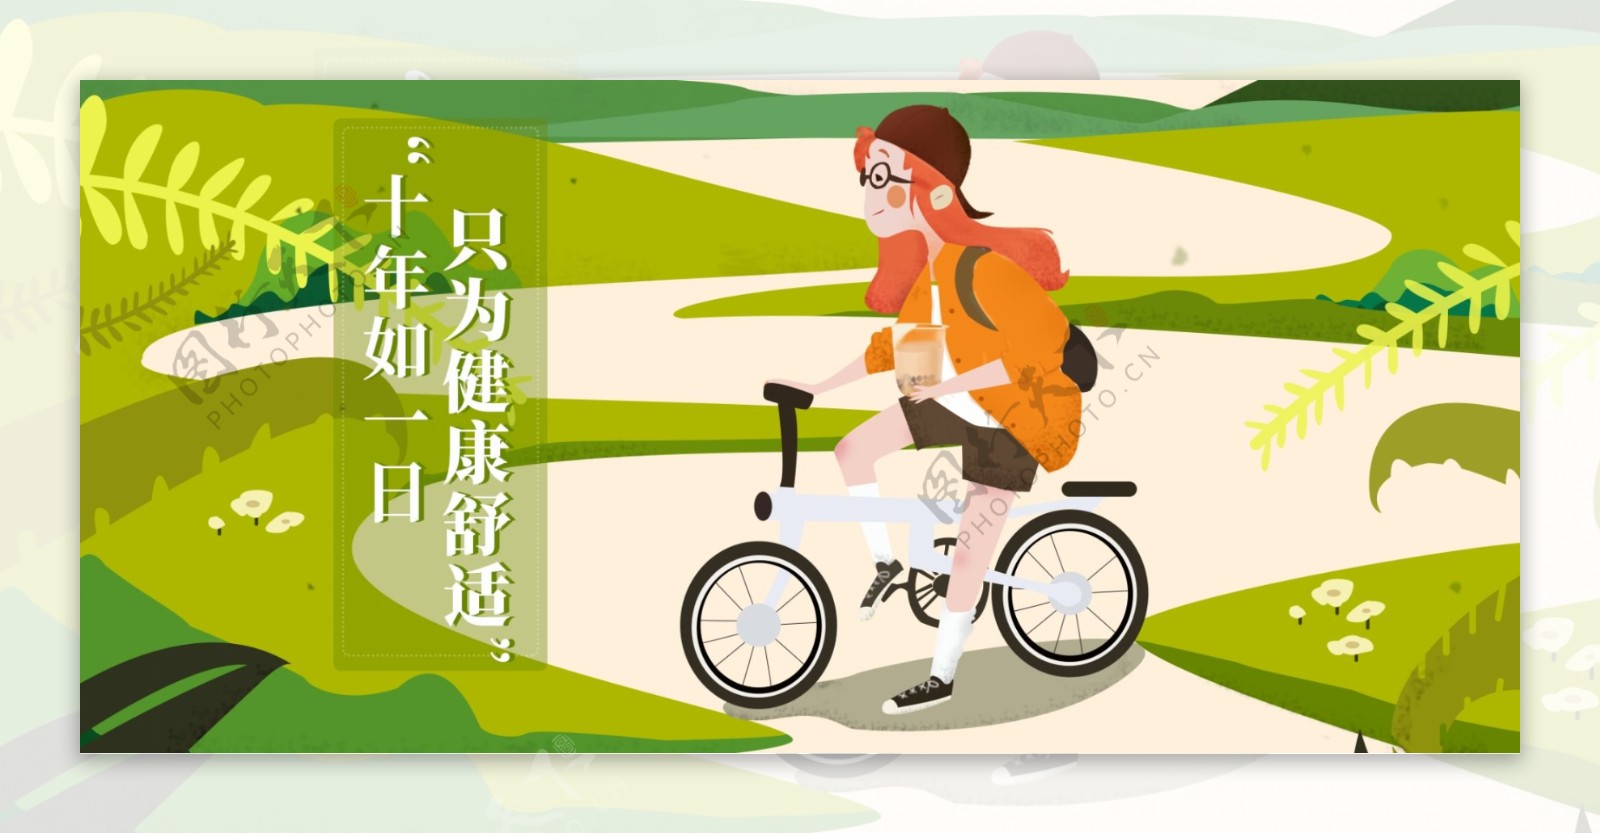 自行车banner